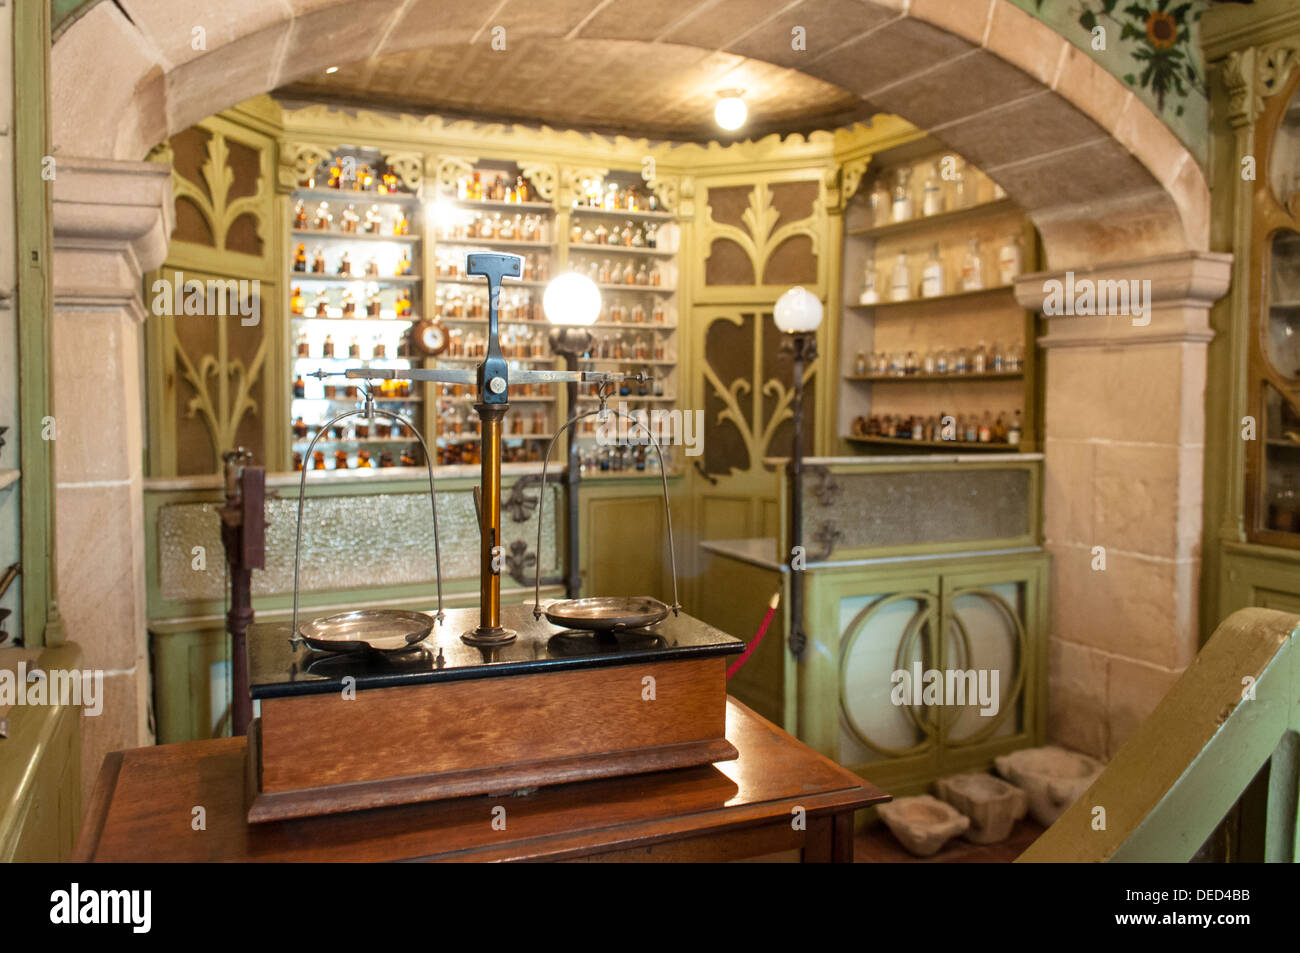 Antiga Farmacia Codina, Caldes de Montbui, Barcelona, Catalunya, España Stock Photo